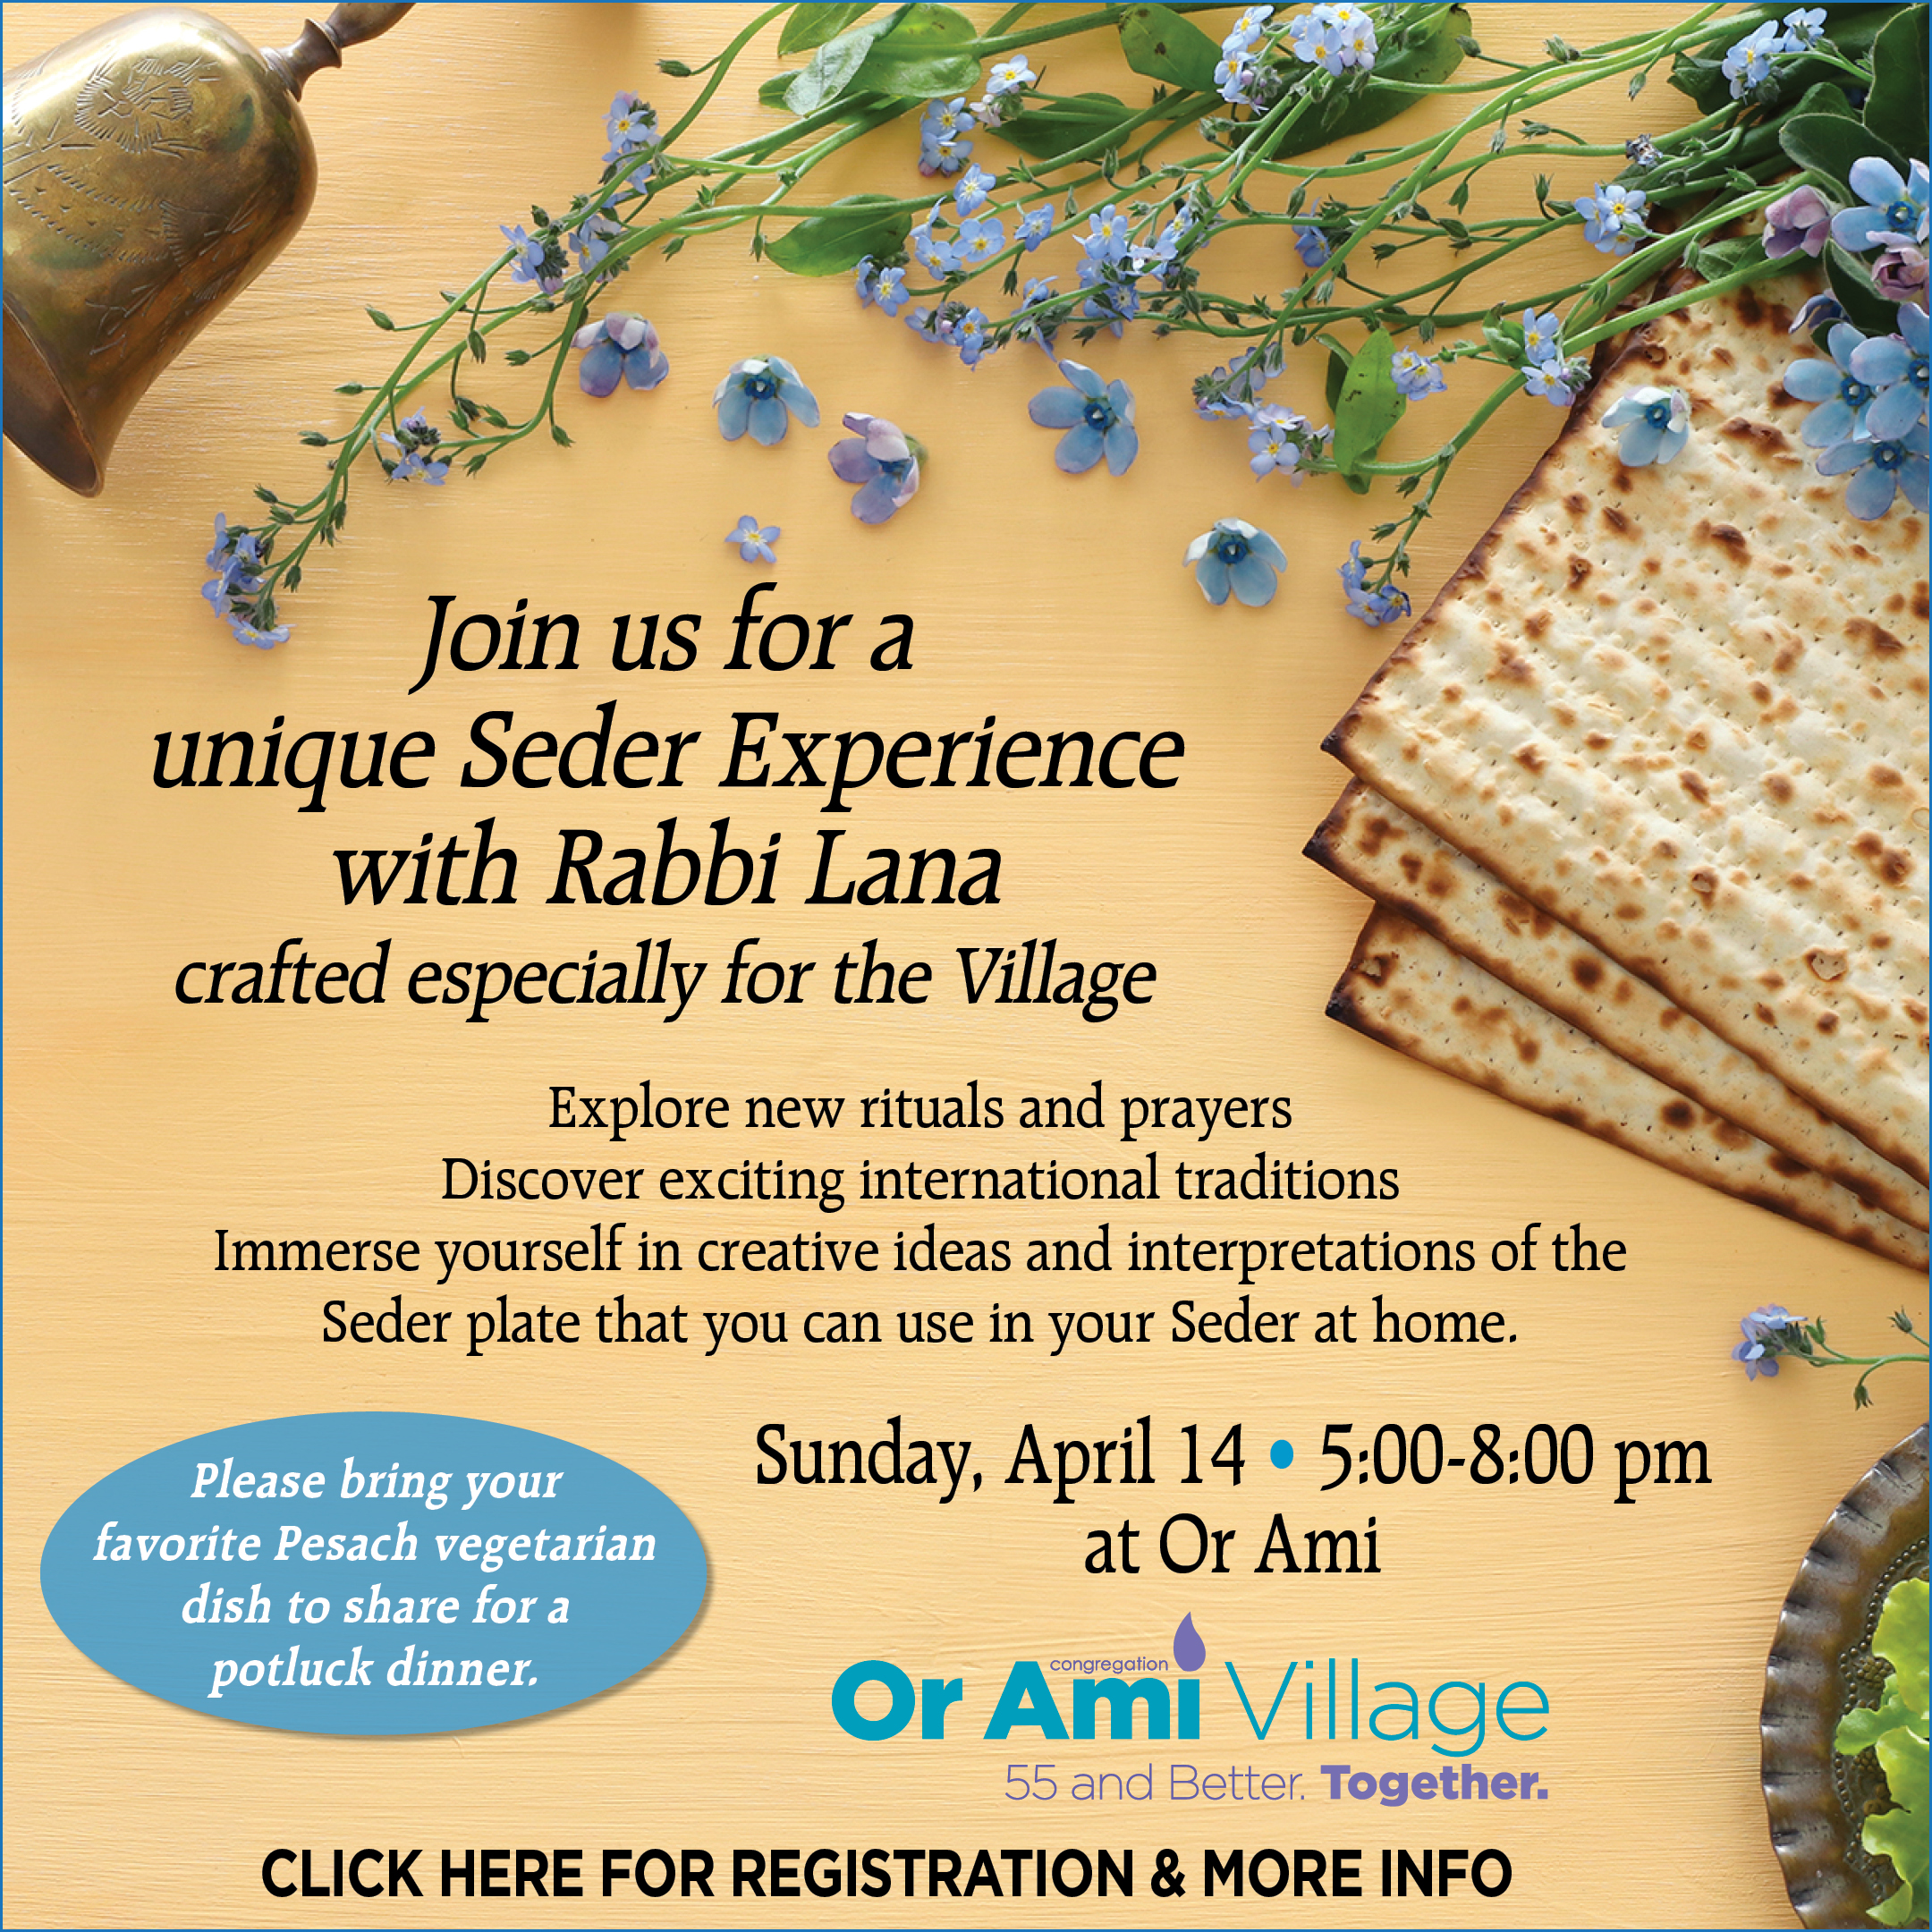 *Or Ami Village - A Unique Seder Experience with Rabbi Lana CLICK